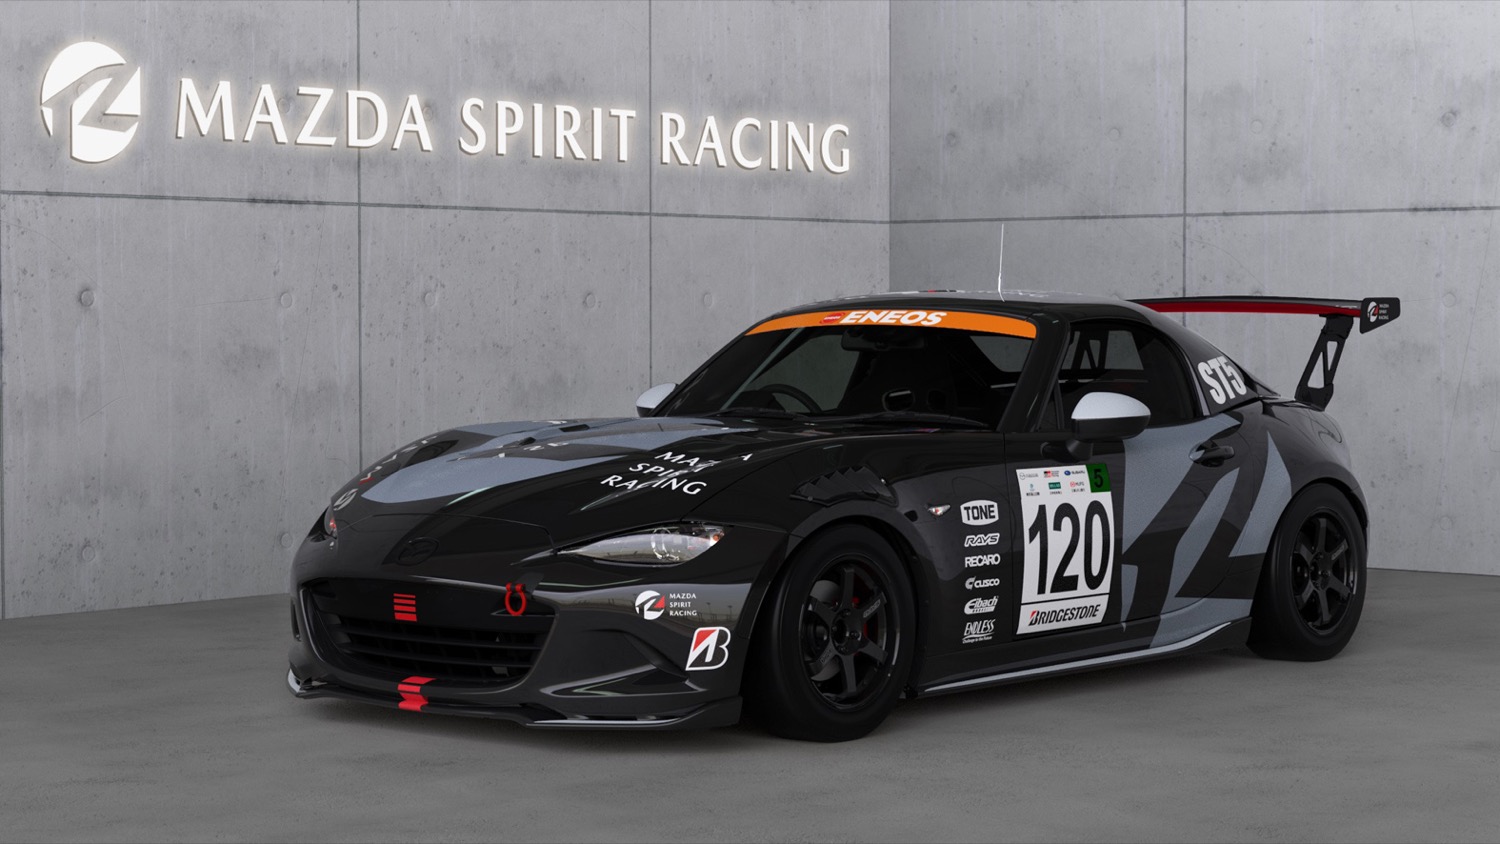 倶楽部MAZDA SPIRIT RACING ROADSTER CNF concept （120号車）のフロントビュー